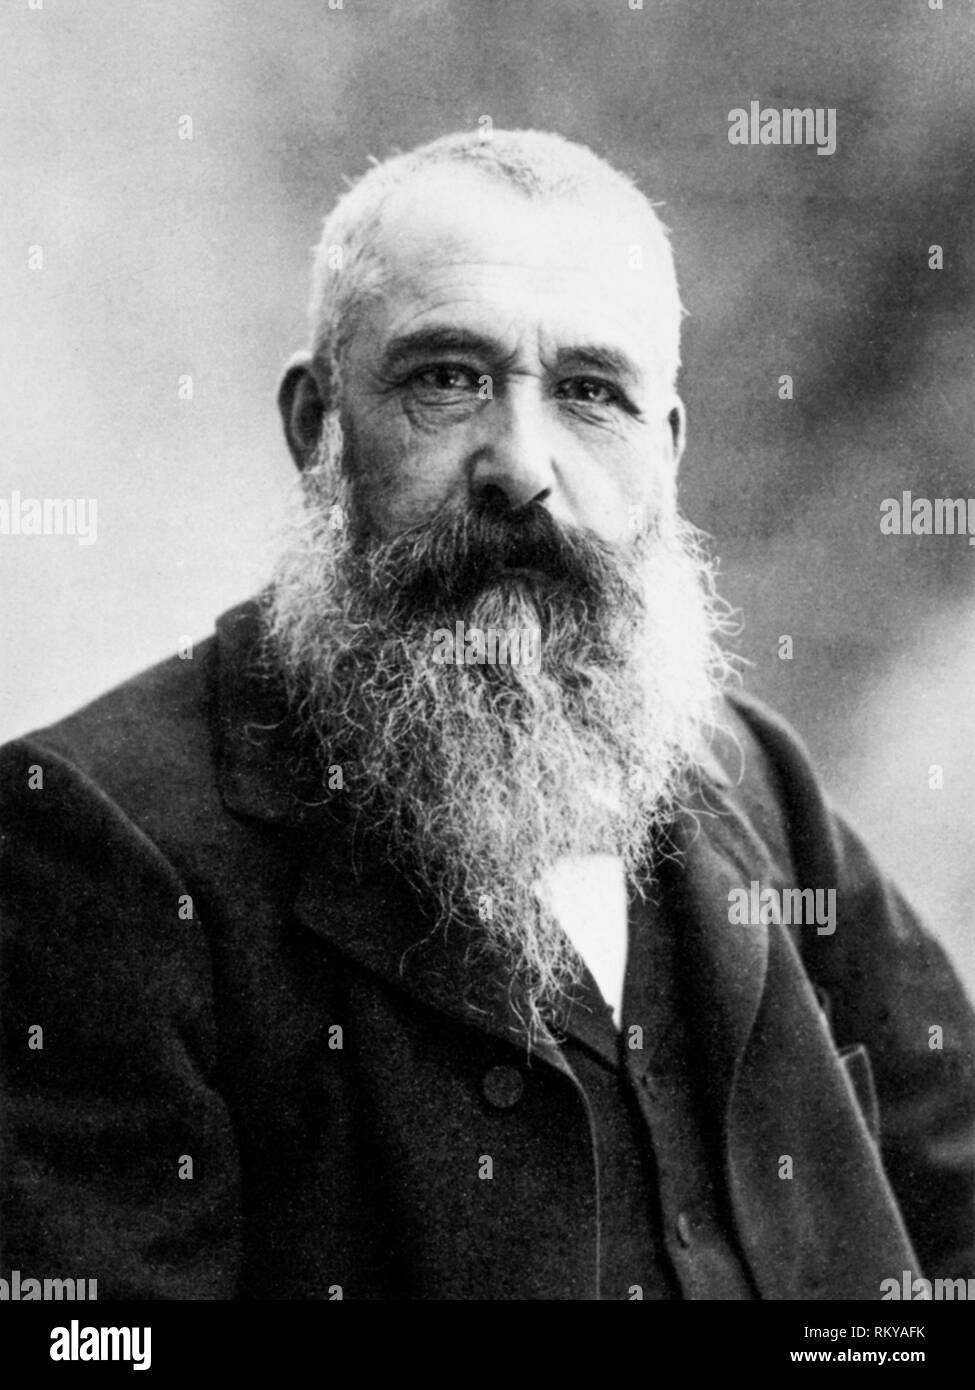 Fotografia ritratto del francese pittore impressionista Claude Monet da Nadar, 1899 Foto Stock